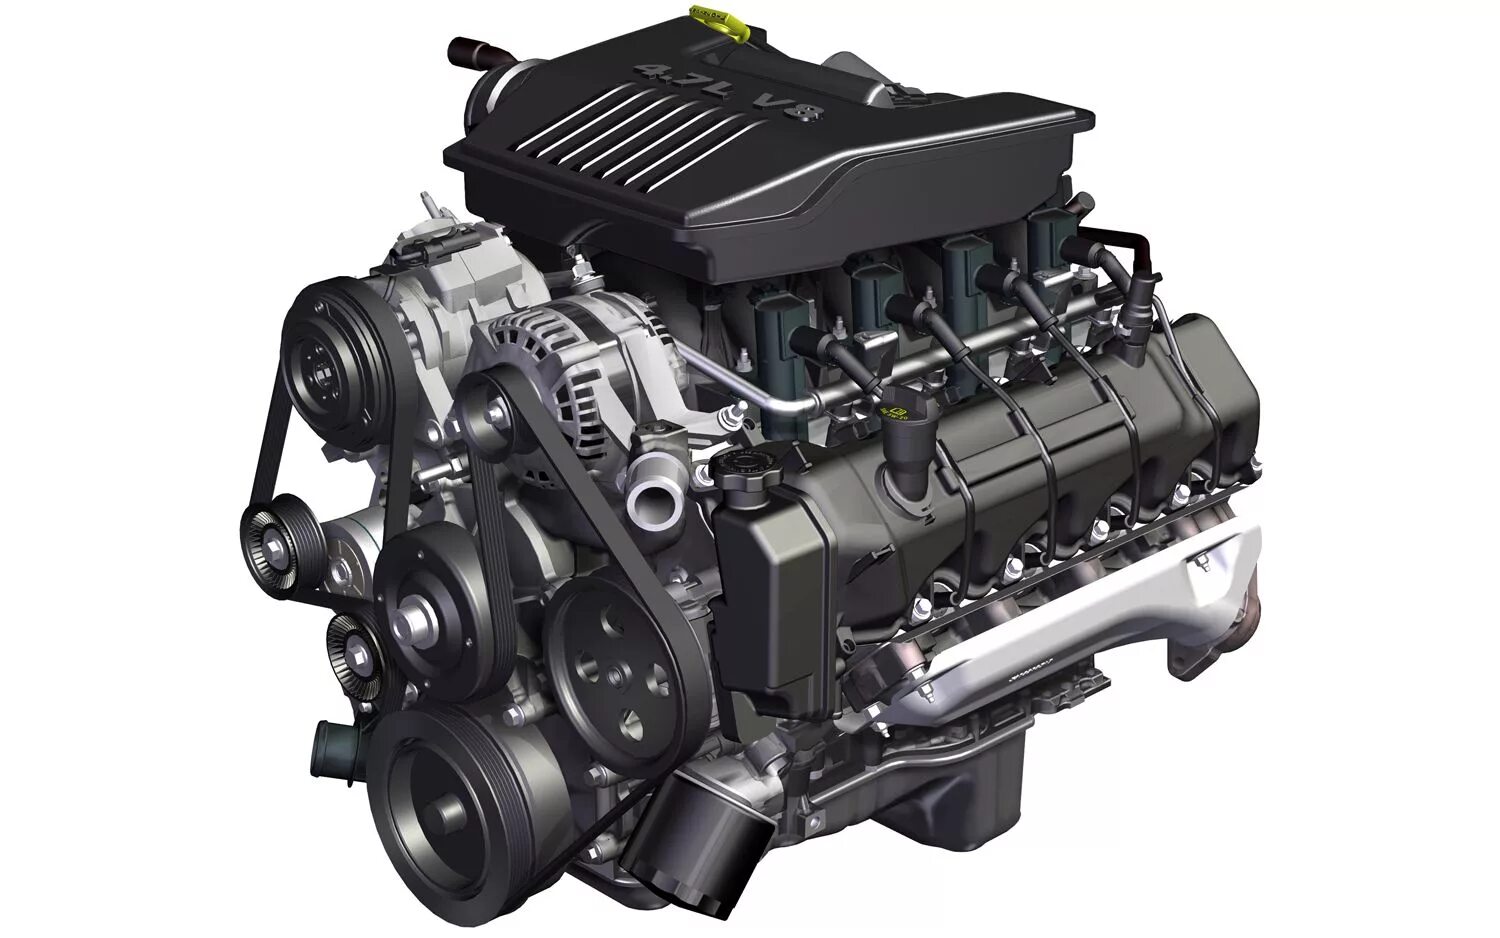 Двигатель v8. POWERTECH 4,7 Jeep v8. Движок v8. Двигатель Chrysler v8. Сайт про моторы